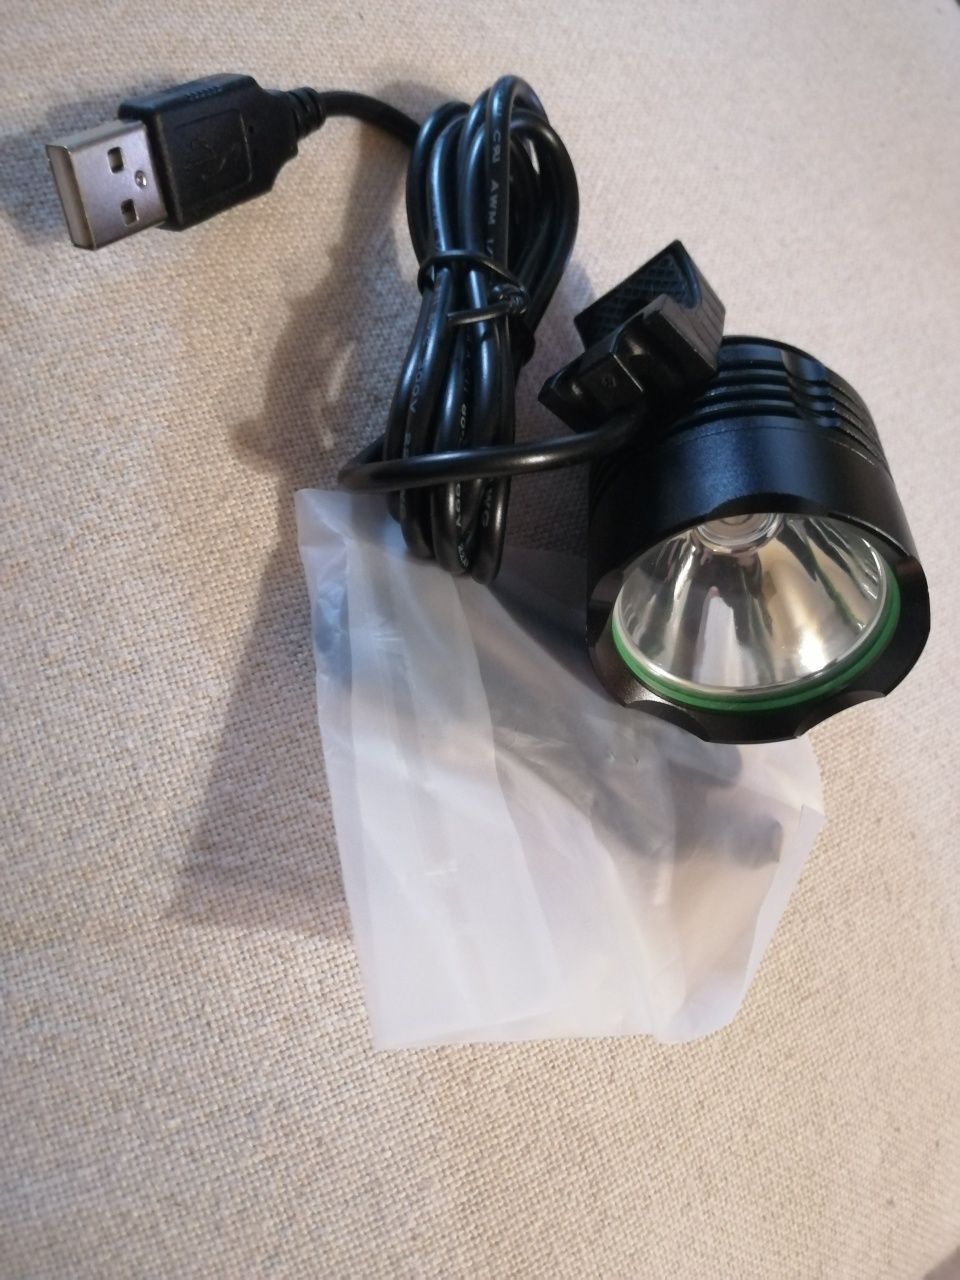 Kompaktowa lampka rowerowa USB o mocnym strumieniu światła. LED CREE